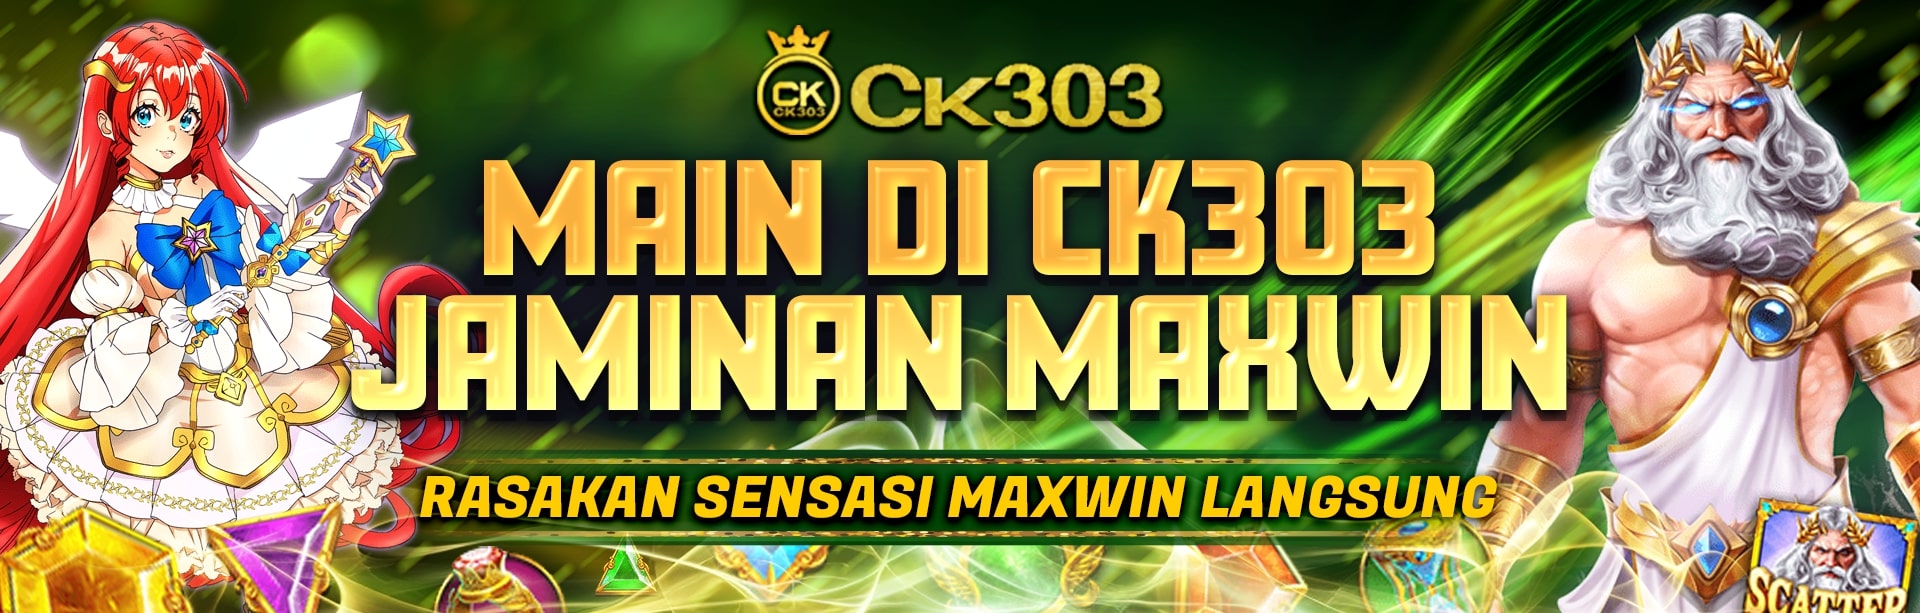 JAMINAN MAXWIN CK303